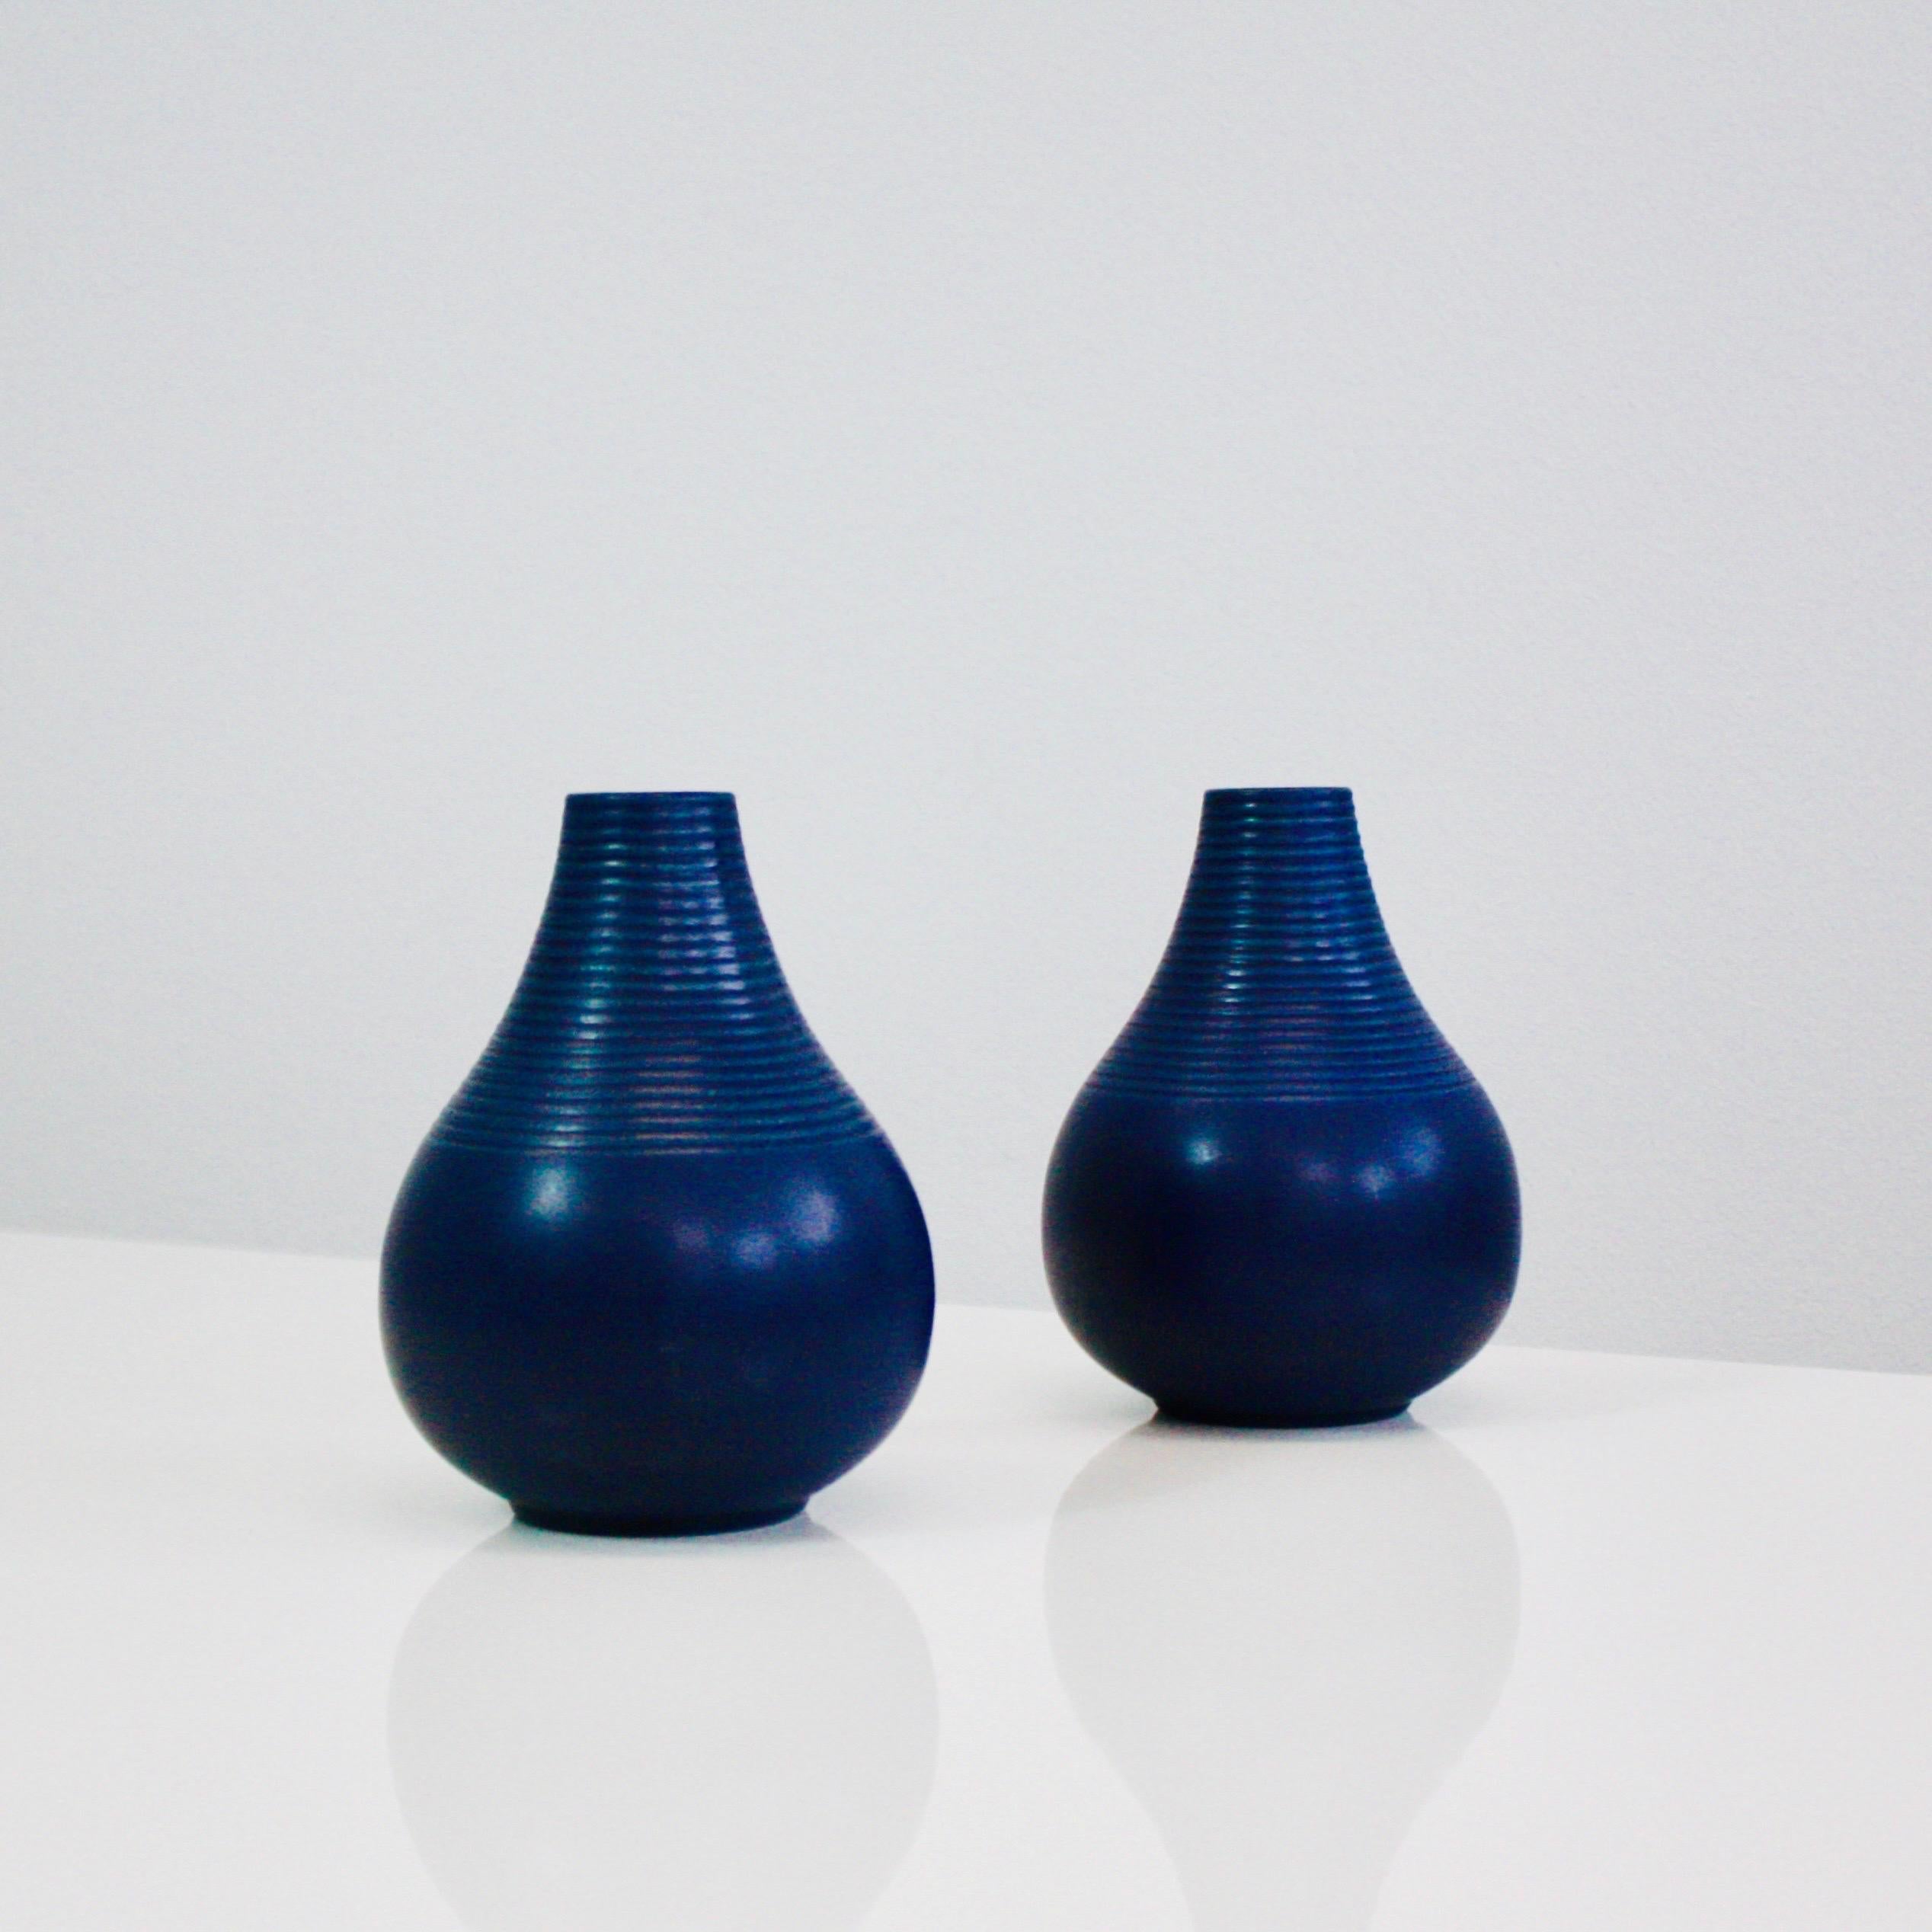 Rare série de vases en grès bleu en forme de goutte avec des lignes horizontales, conçus par Axel Sørensen en 1941 pour P. Ipsense Enke. Un ensemble irrésistible pour tout bel espace. 

* Ensemble (2) de vases en grès bleu en forme de goutte avec